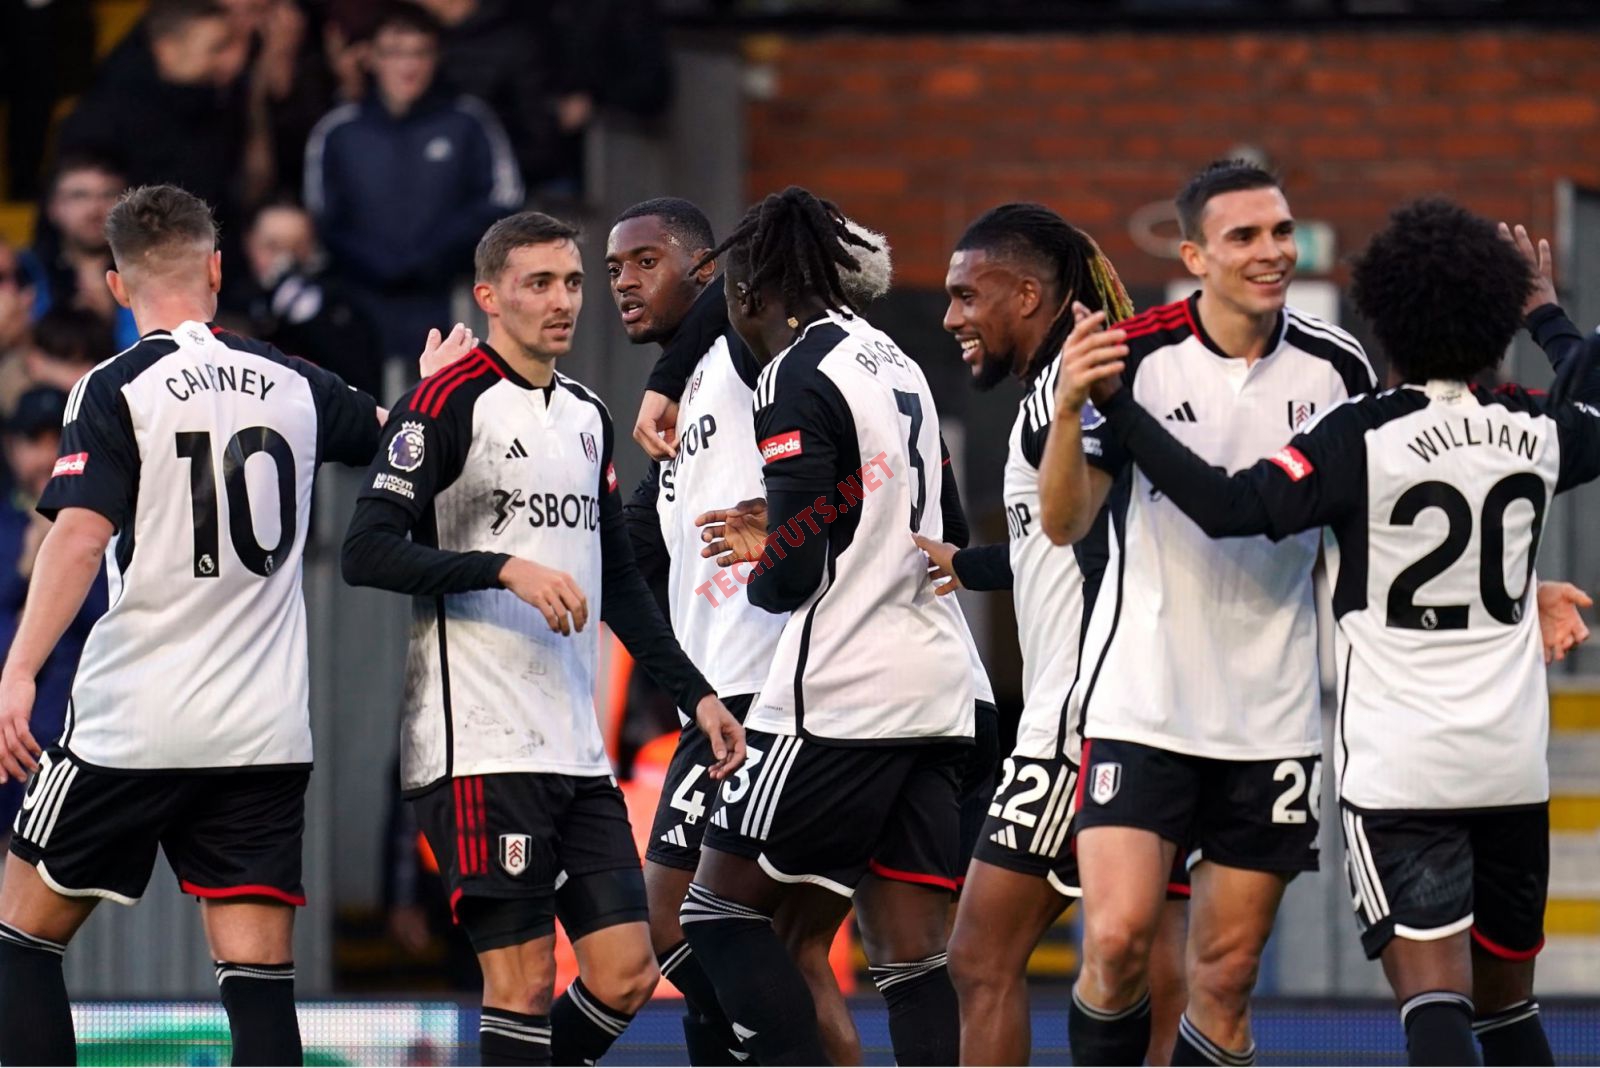 Fulham - Một trong những đội bóng có lịch sử lâu đời nhất tại Anh quốc